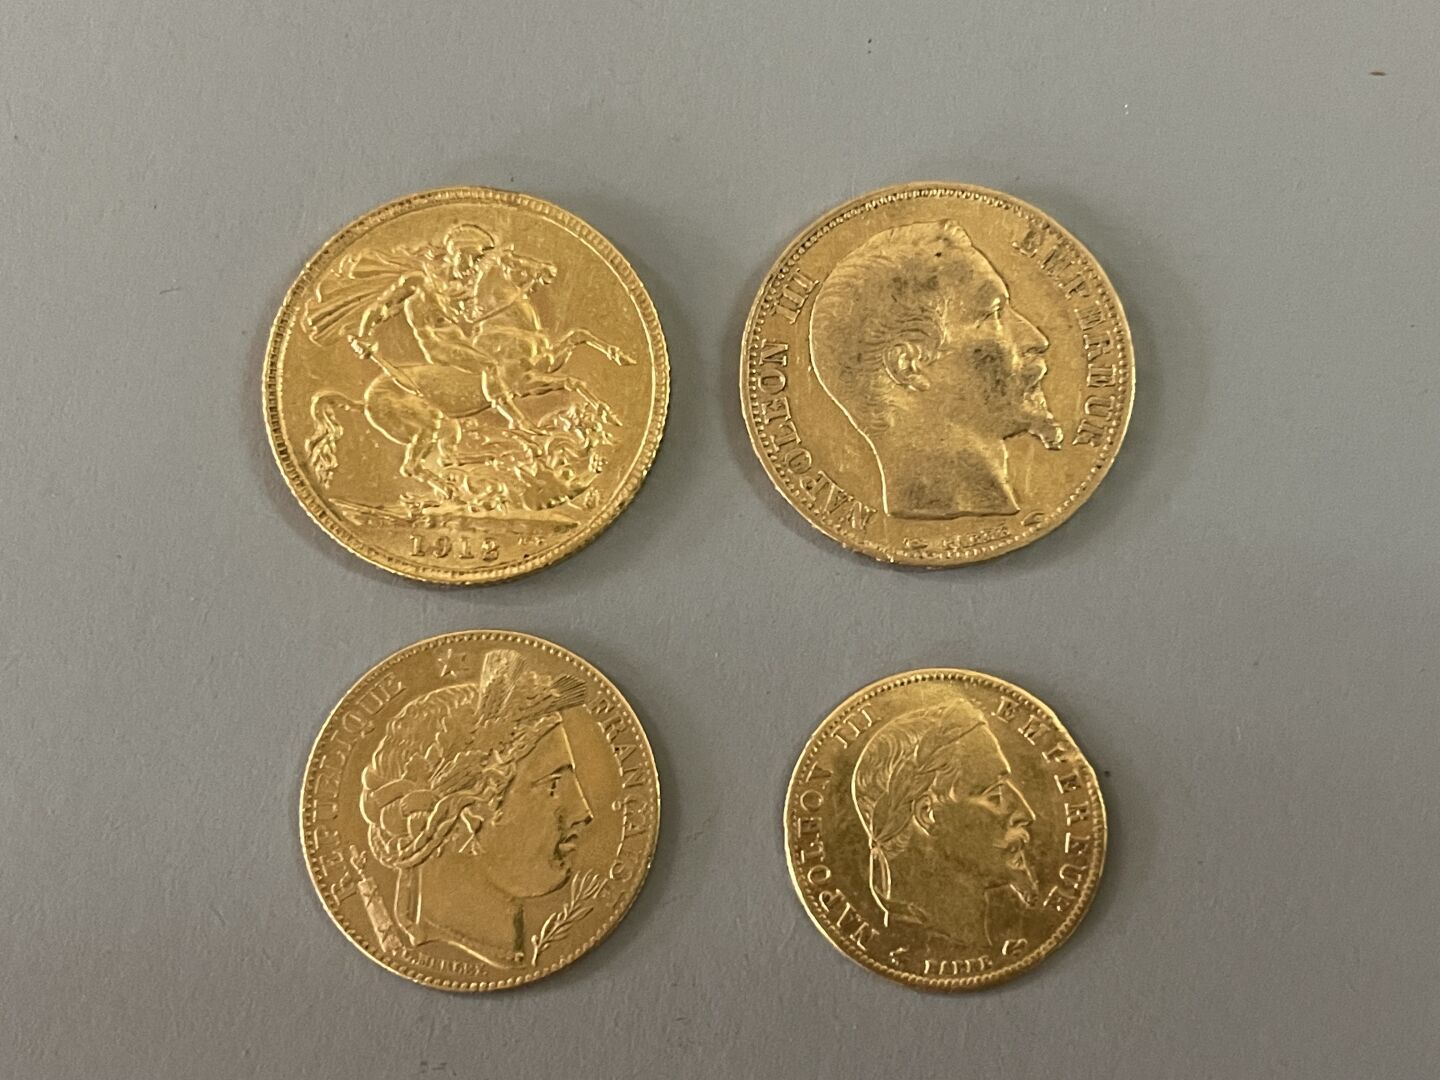 Null Münzen aus Gold:

- 1 Sovereign Gold 1912

- 1 20-Franken-Münze Gold 1853

&hellip;